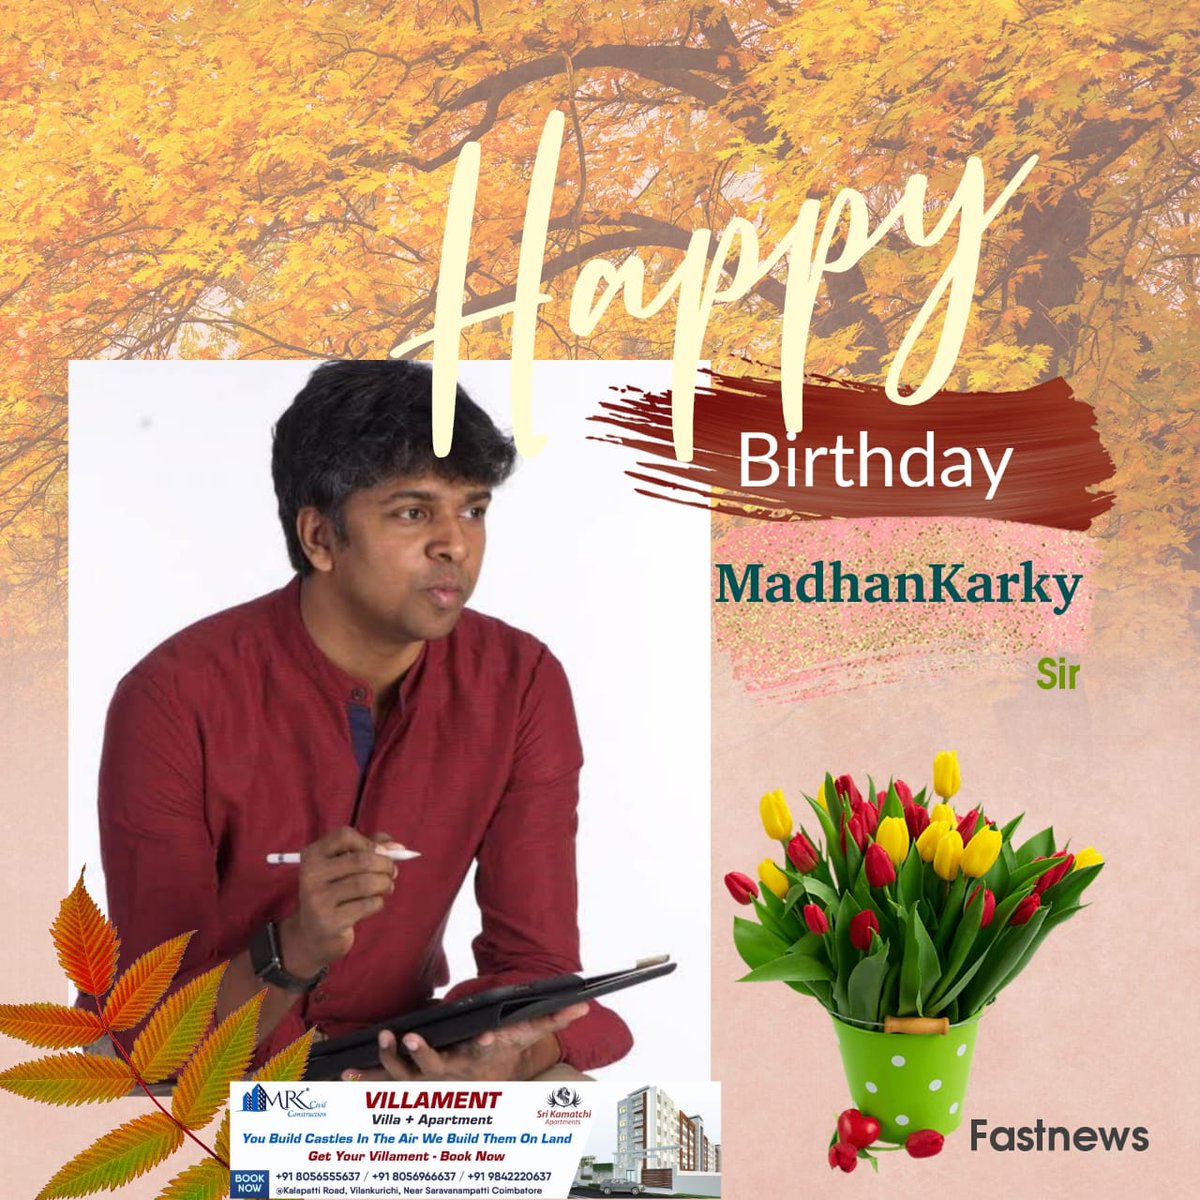 பாடலாசிரியர் மதன் கார்க்கி பிறந்தநாள் இன்று

#MadhanKarky | #HBDMadhanKarky